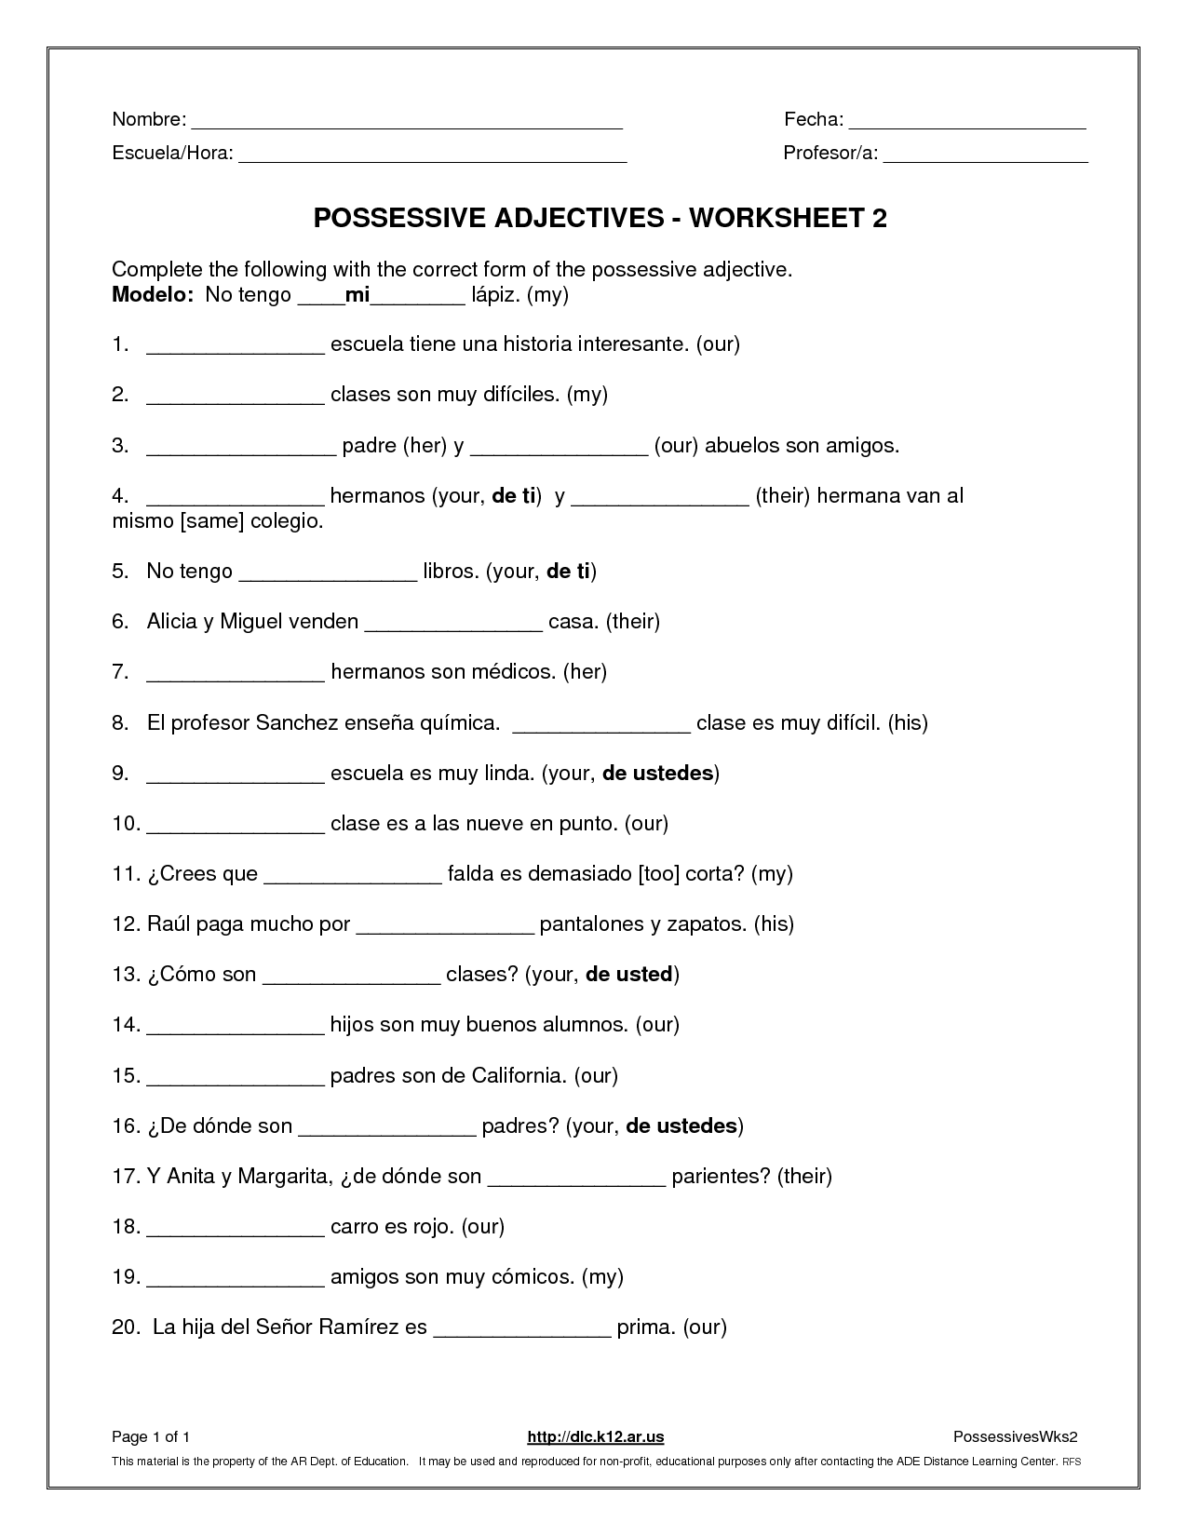 demonstrative-adjectives-worksheets-for-grade-5-adjectiveworksheets